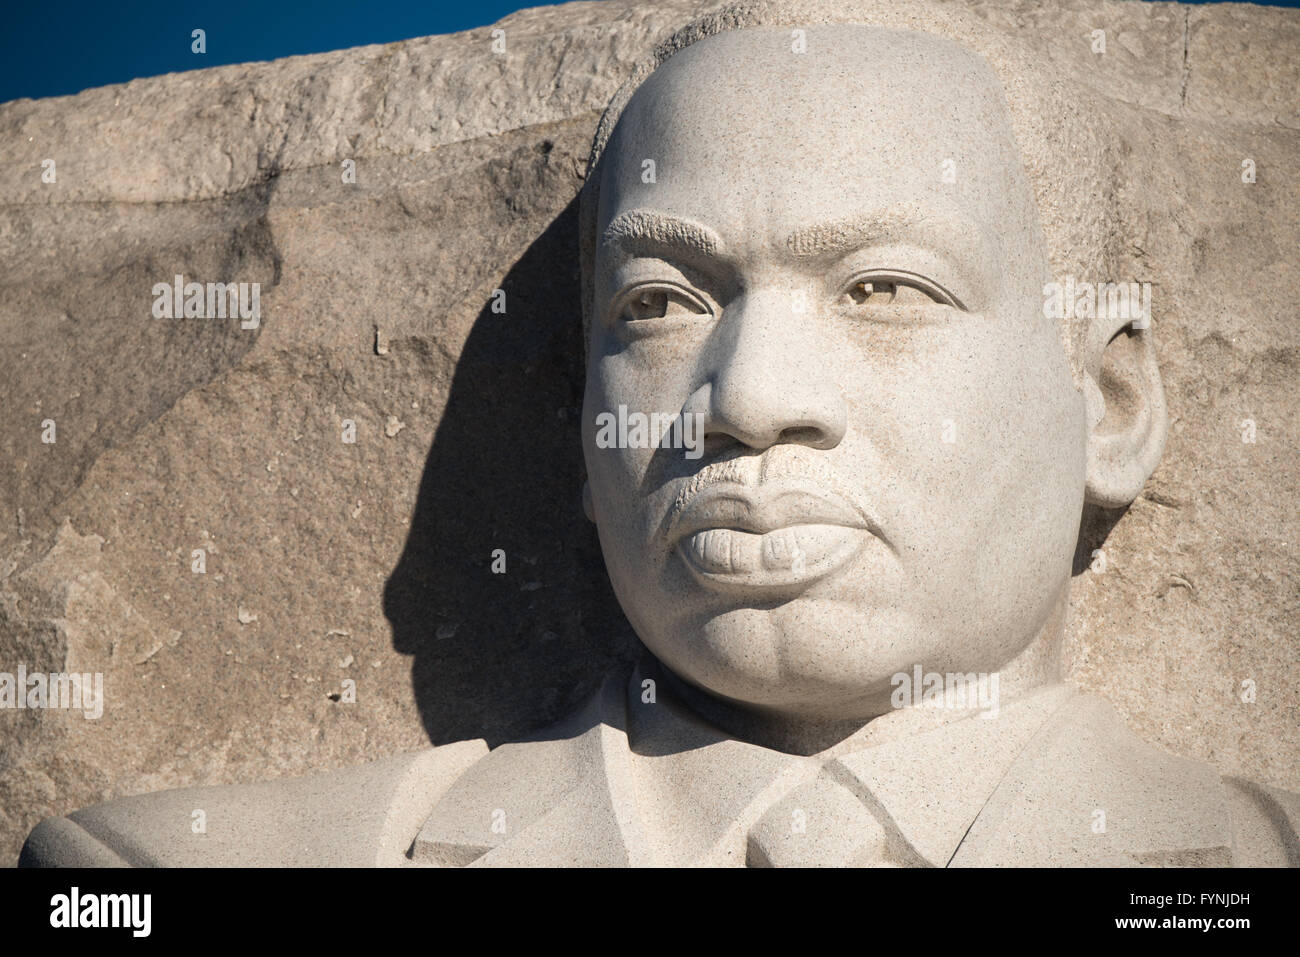 WASHINGTON DC, USA - das im Jahr 2011 eröffnete der Martin Luther King, Jr. Memorial das Civil Rights Leader und die Bürgerrechtsbewegung erinnert. Es steht am Ufer des Tidal Basin in Washington DC. Sein Herzstück ist eine große Statue von Dr. König, das von Lei Ellen Orth geschnitzt wurde. Stockfoto